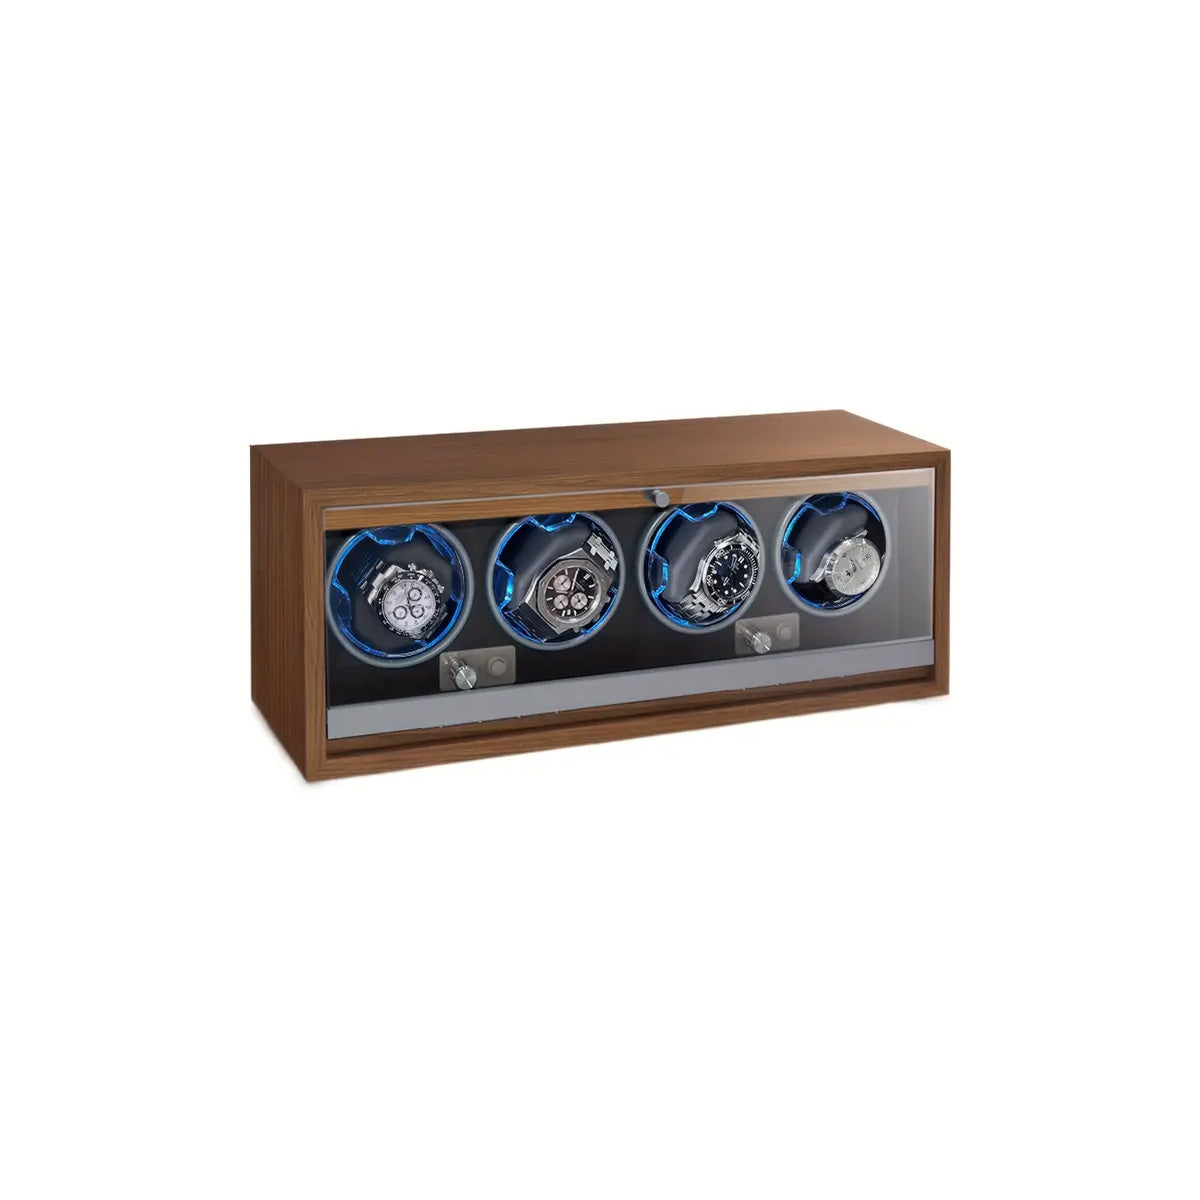 4 Unit Automatic Watch Winder Box - Wood